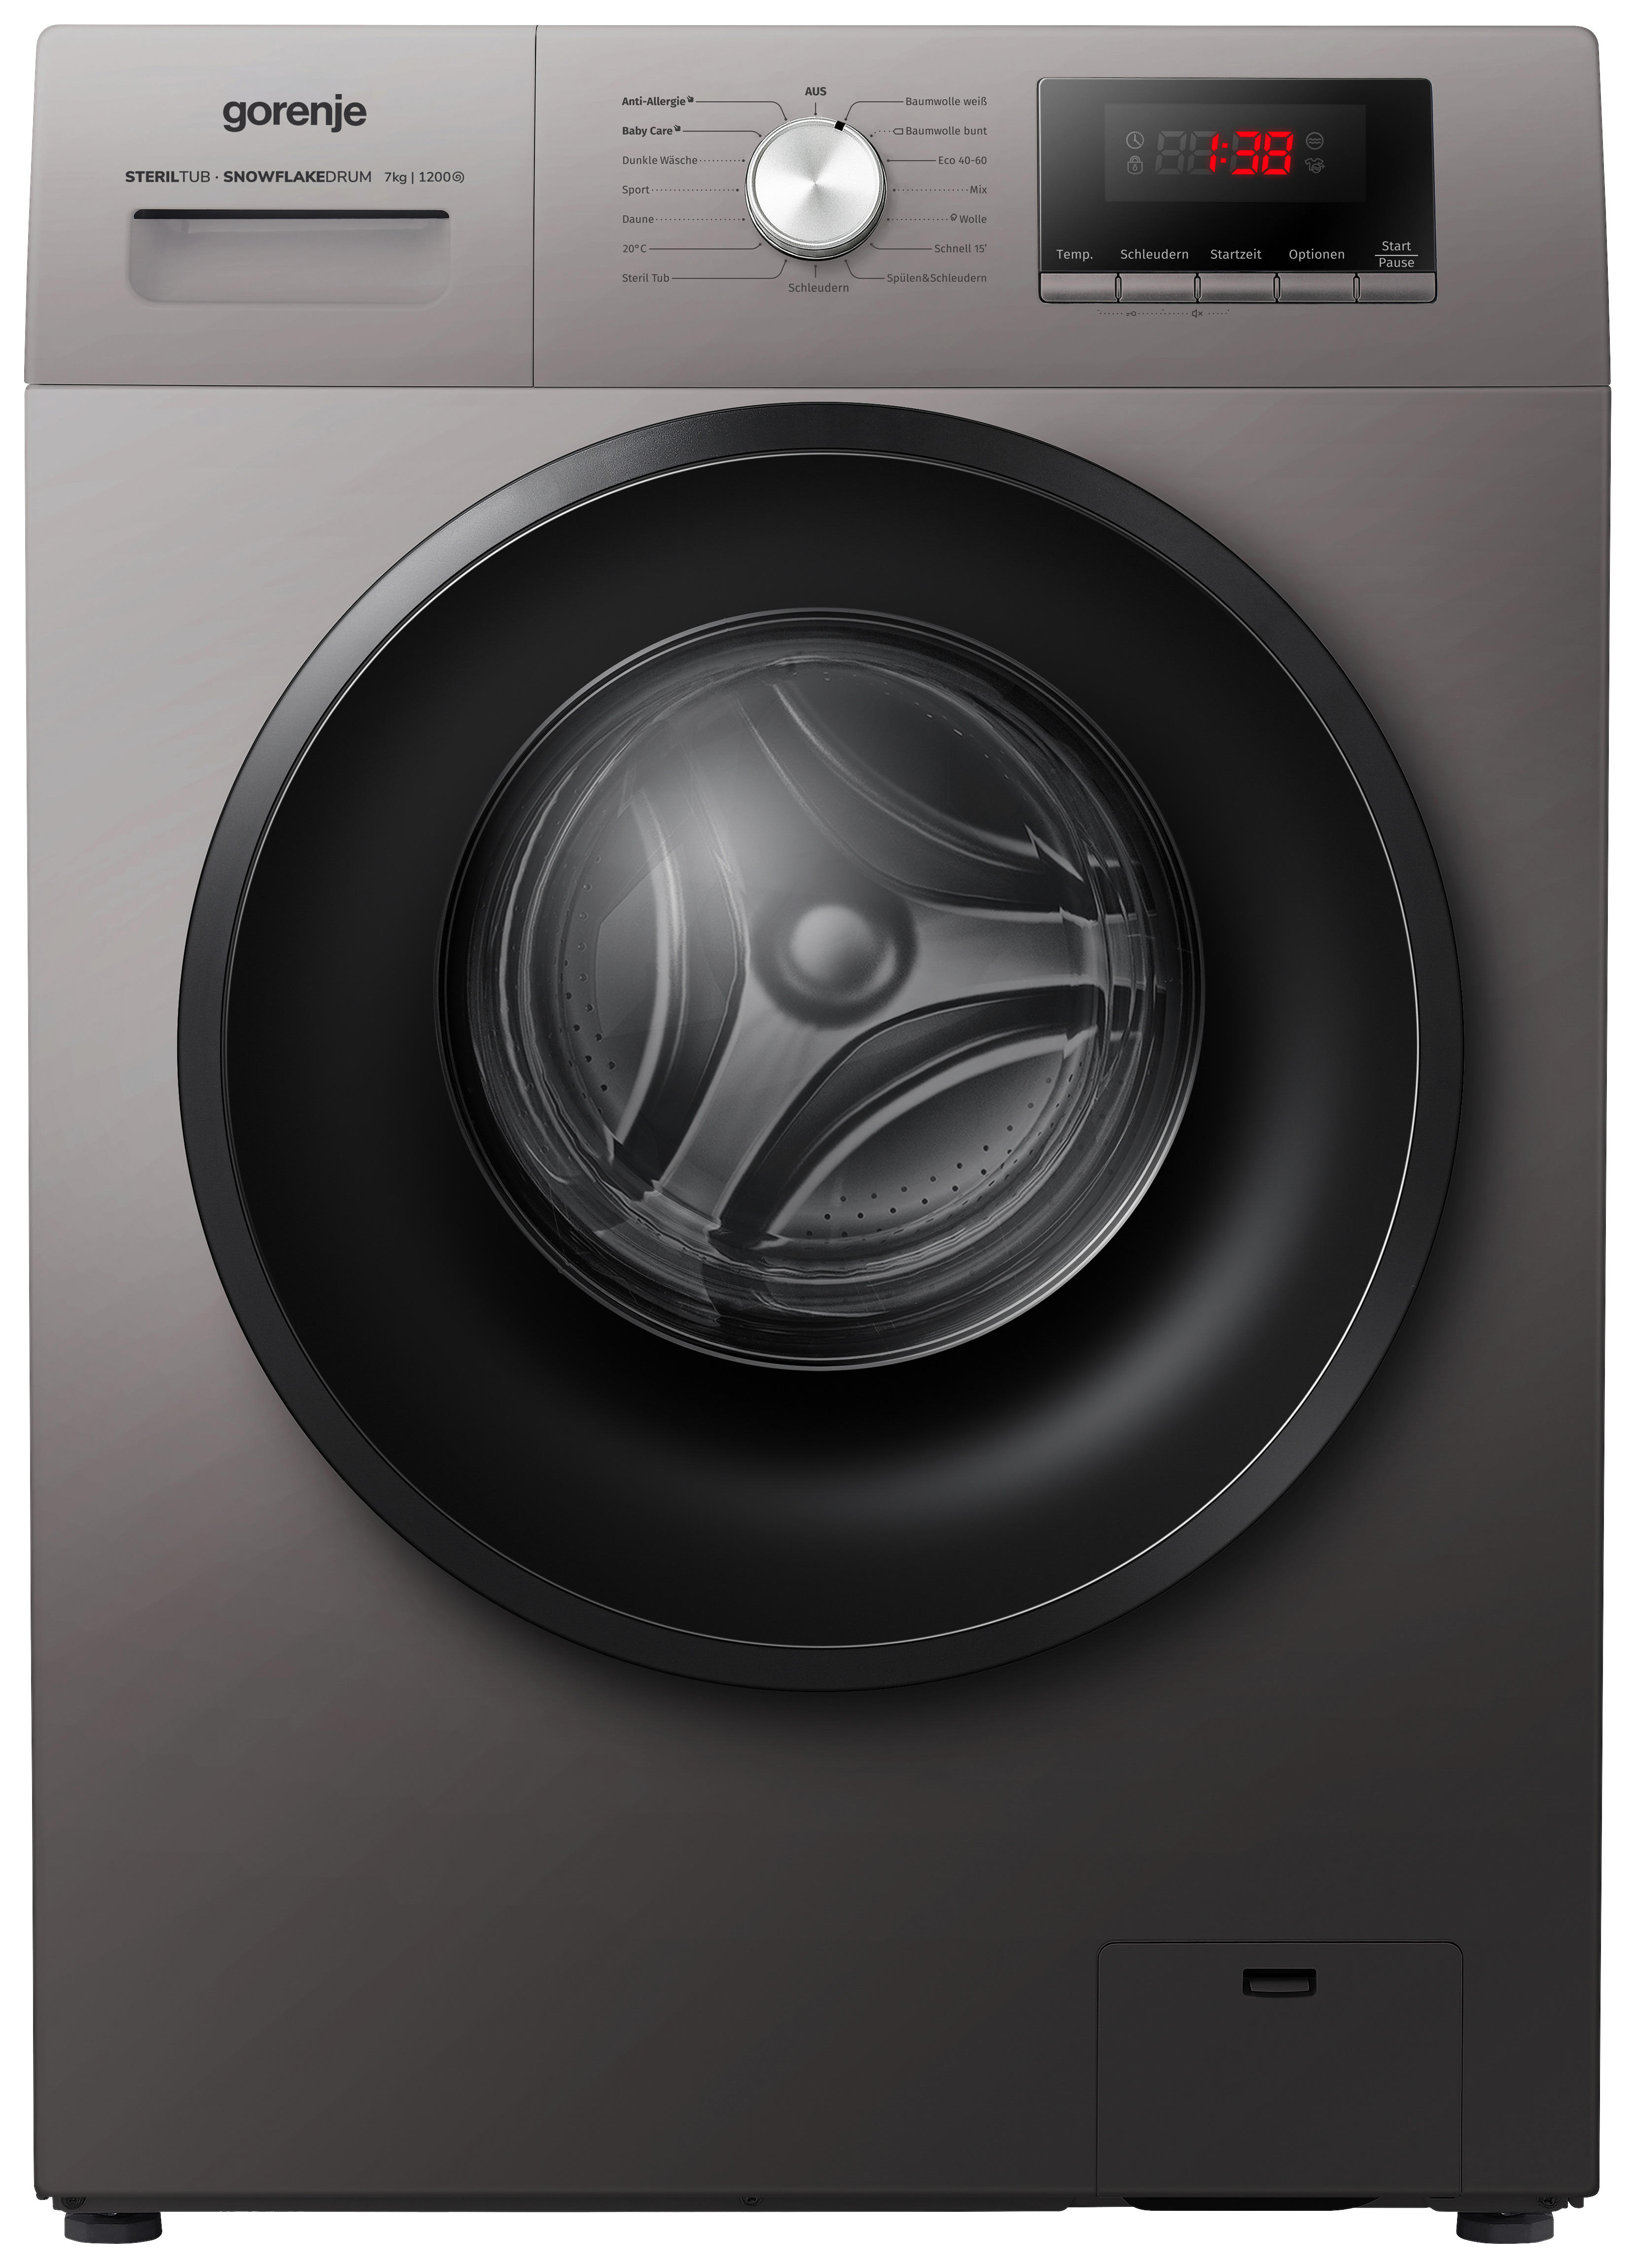 Real angebote waschmaschine - Alle Produkte unter allen verglichenenReal angebote waschmaschine!